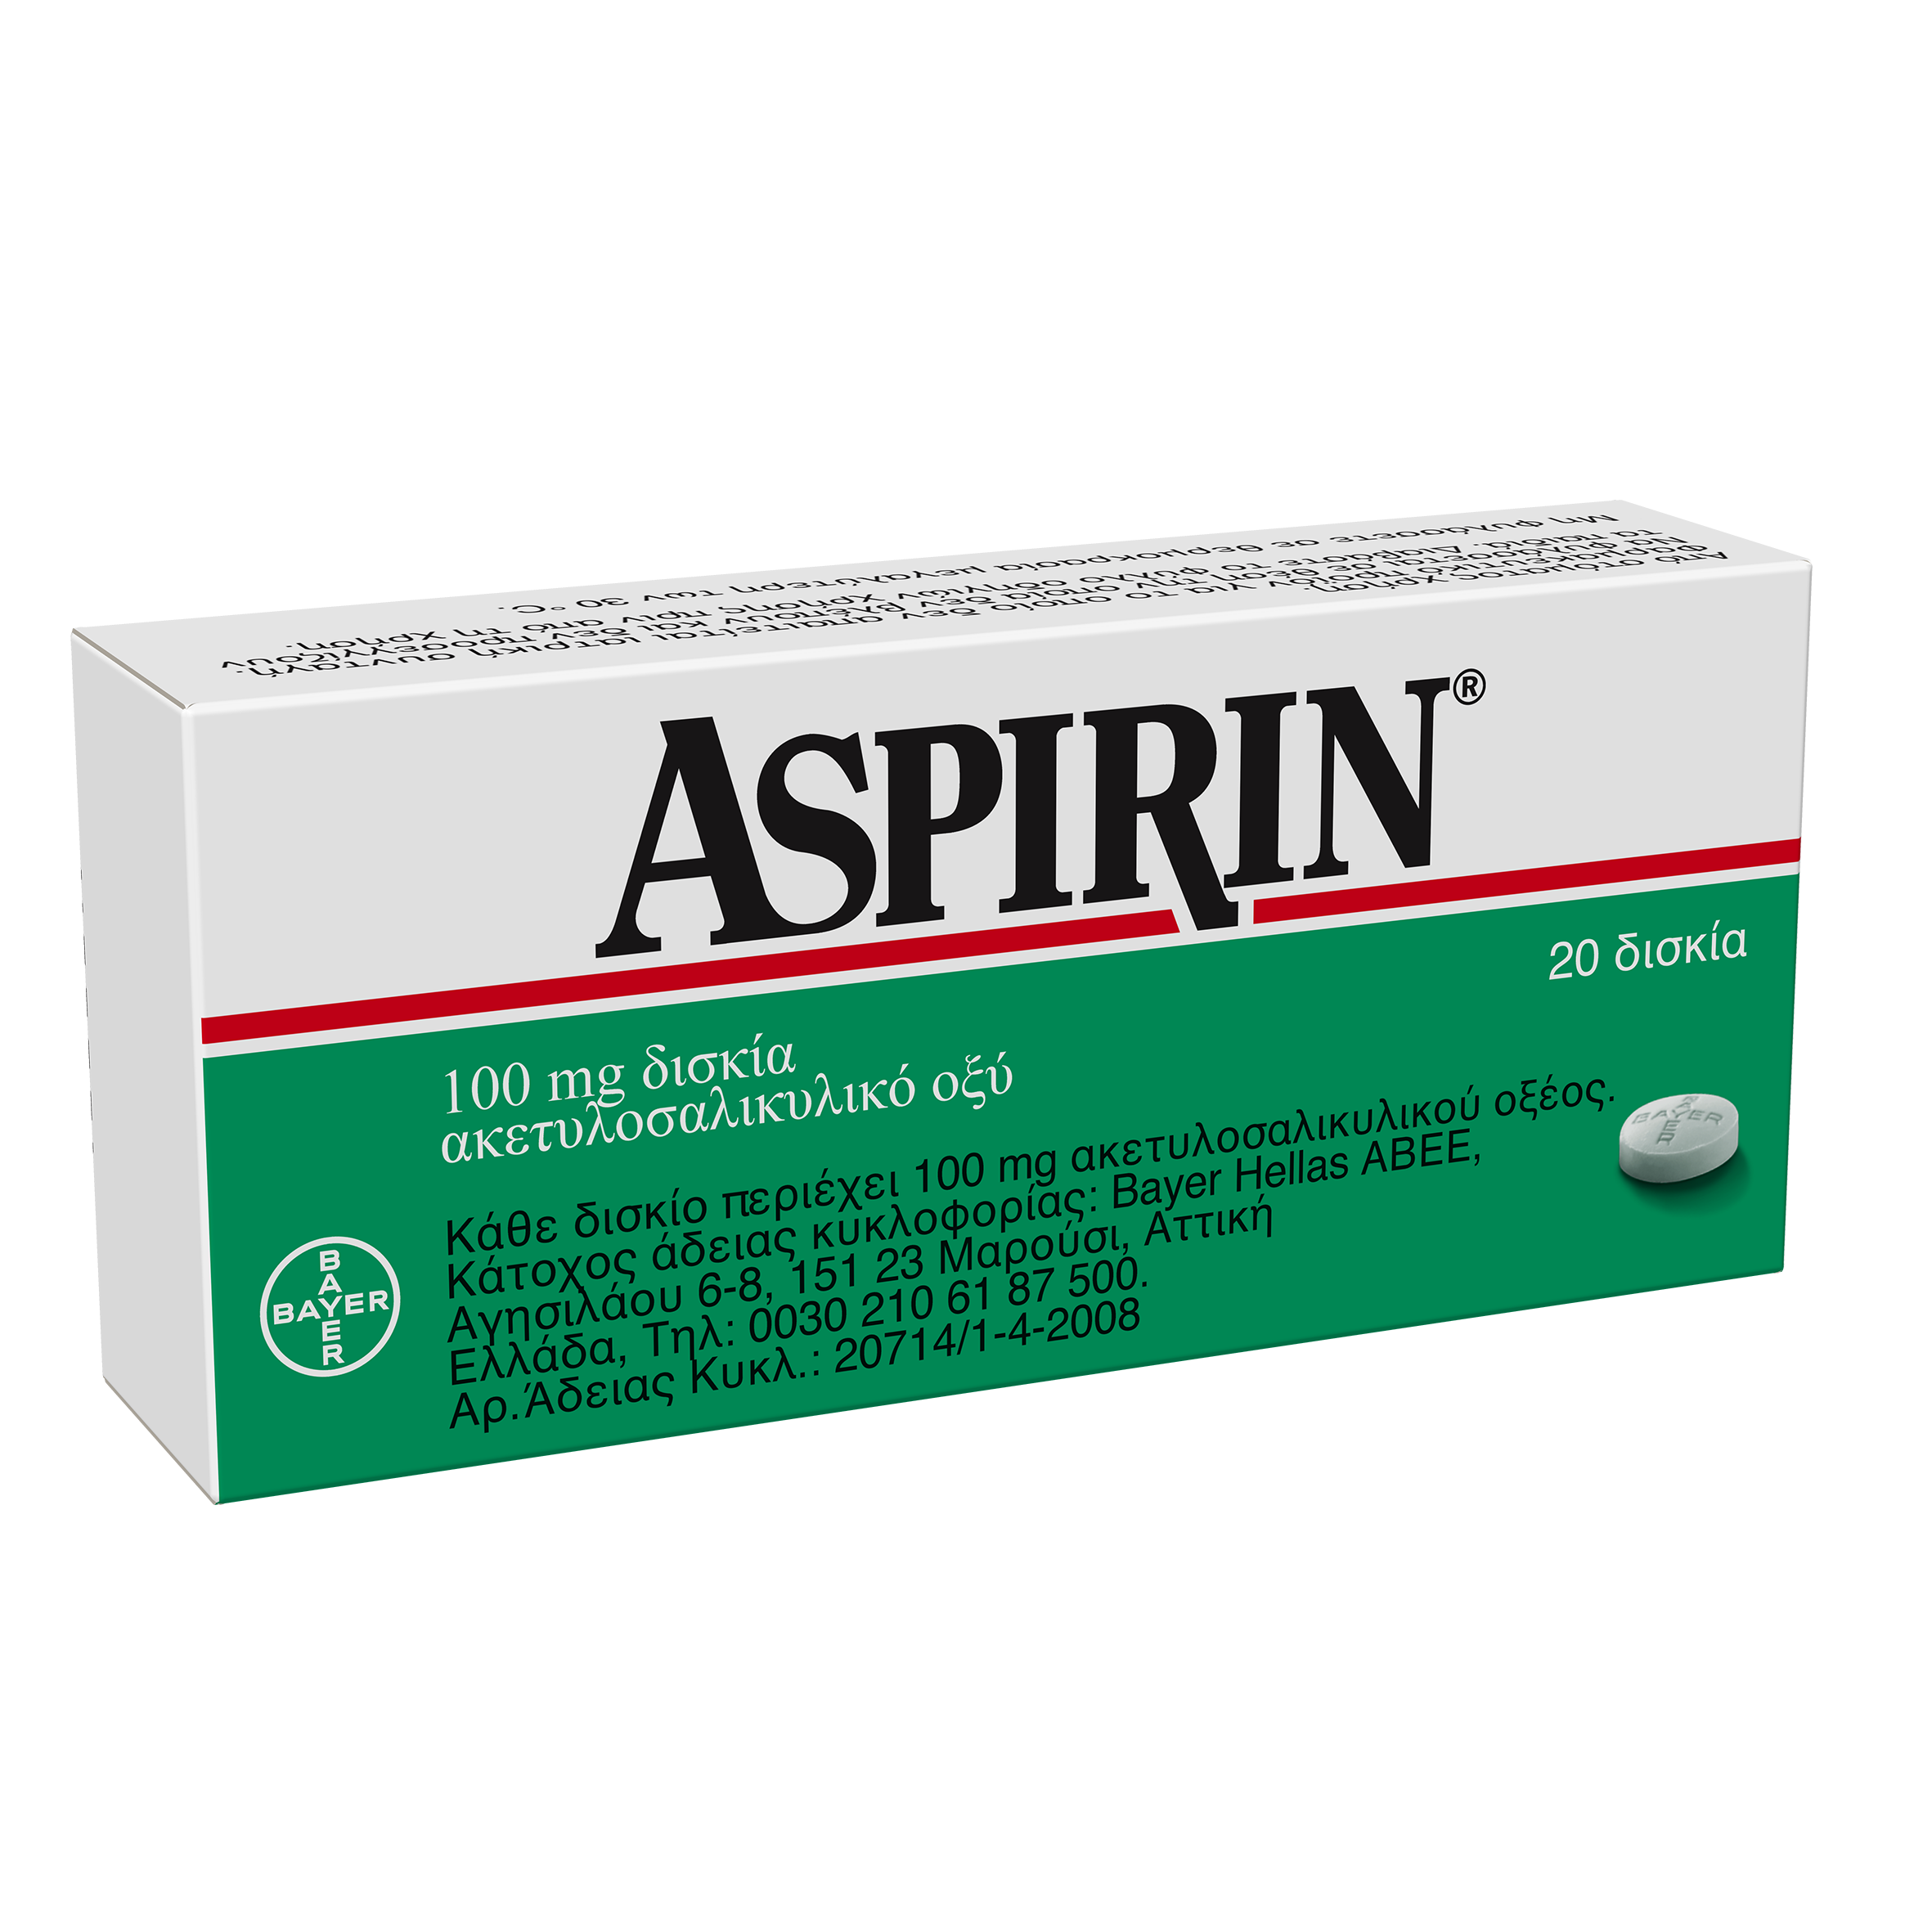 Aspirin® 100mg